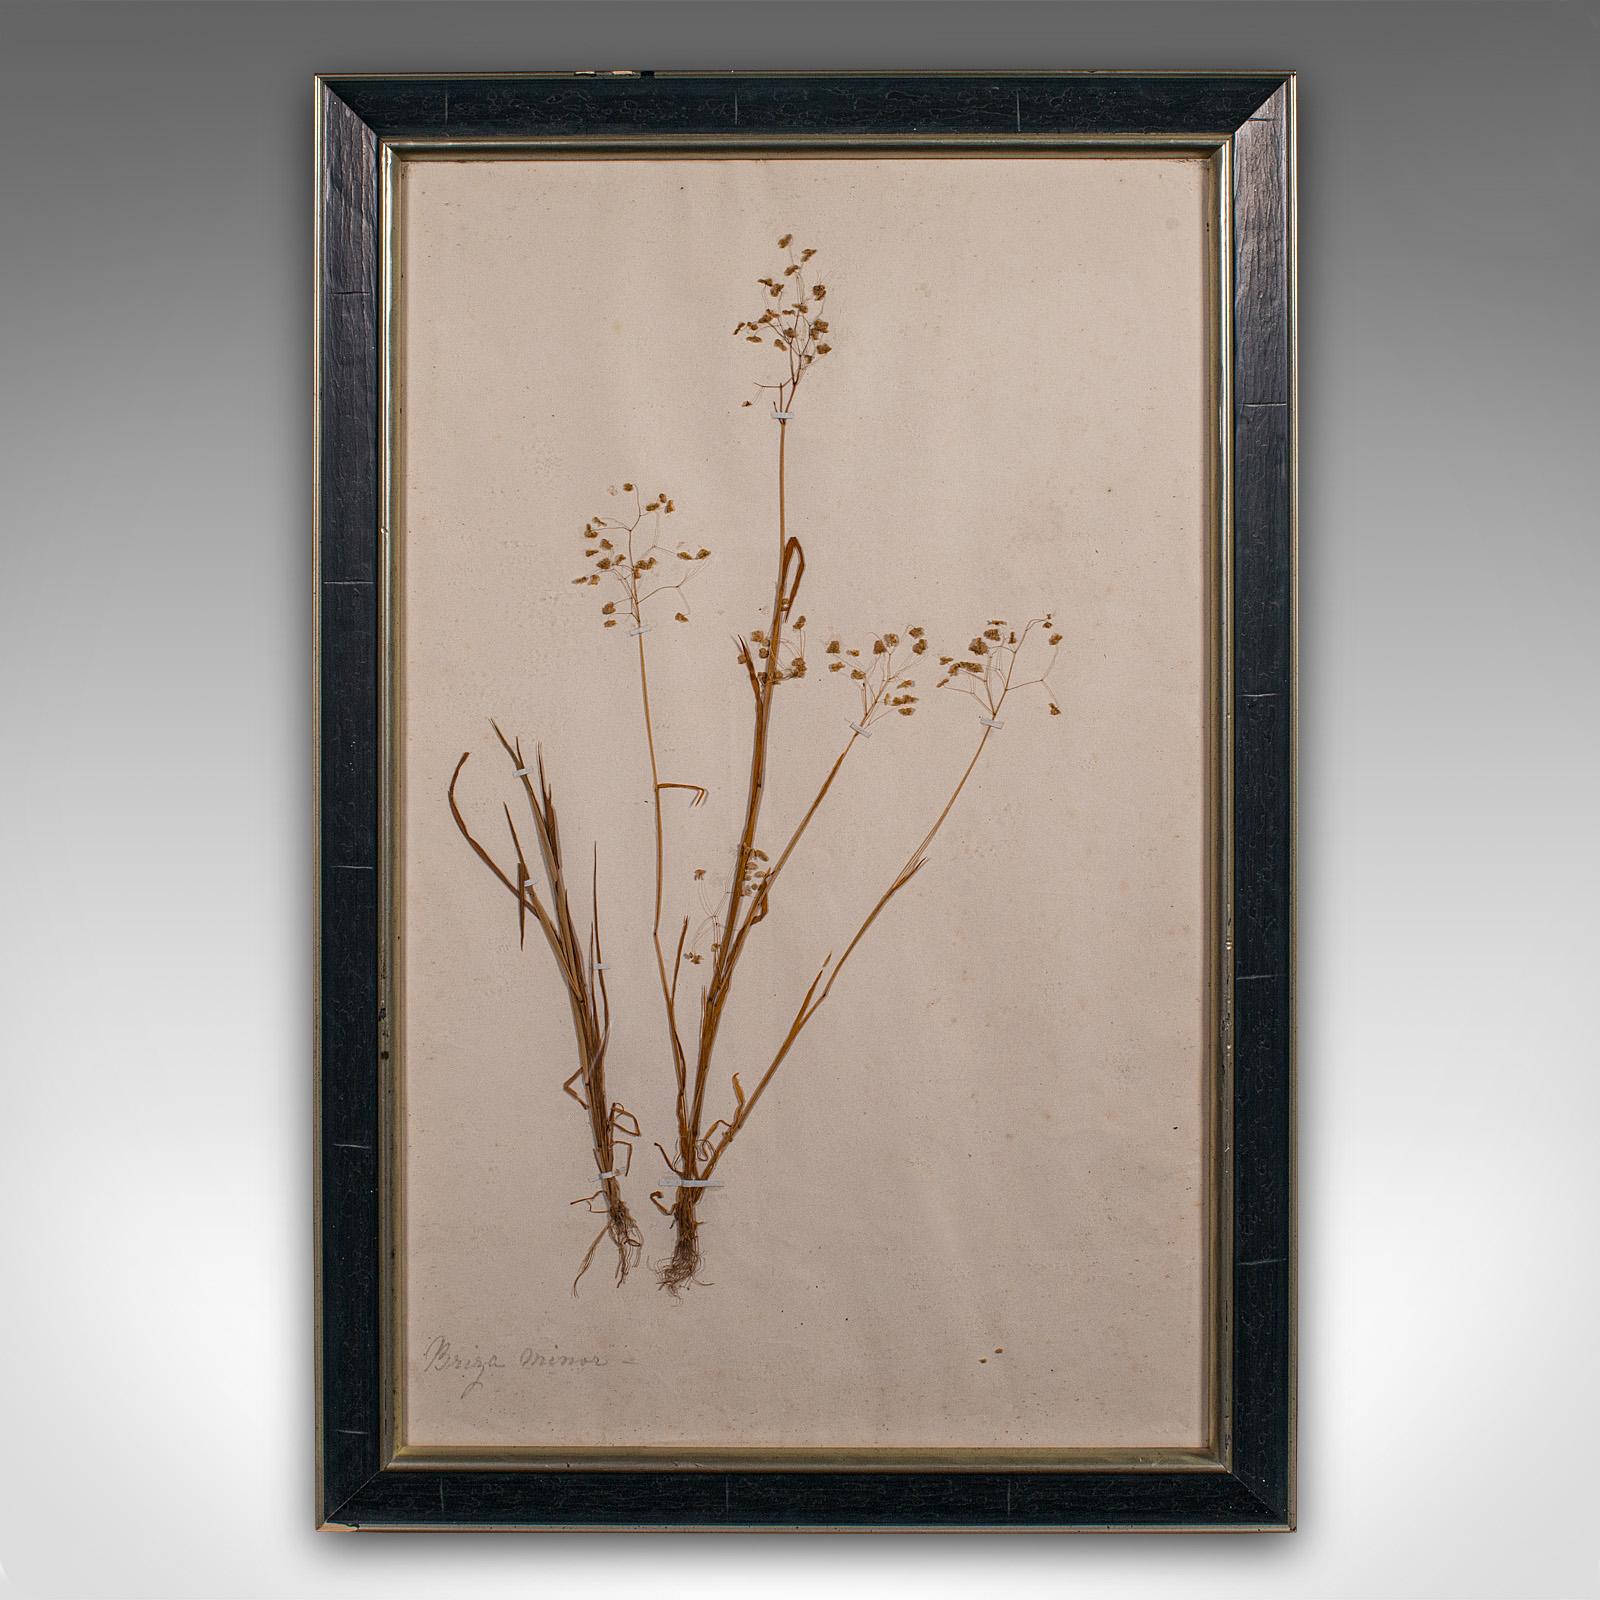 Dies ist ein antiker Satz von 6 botanischen Exemplaren. Eine englische Sammlung von getrockneten Gräsern und Blumen aus der frühen viktorianischen Periode, um 1850.

Wunderschön erhaltene viktorianische Pflanzenwelt, übersichtlich präsentiert
Mit